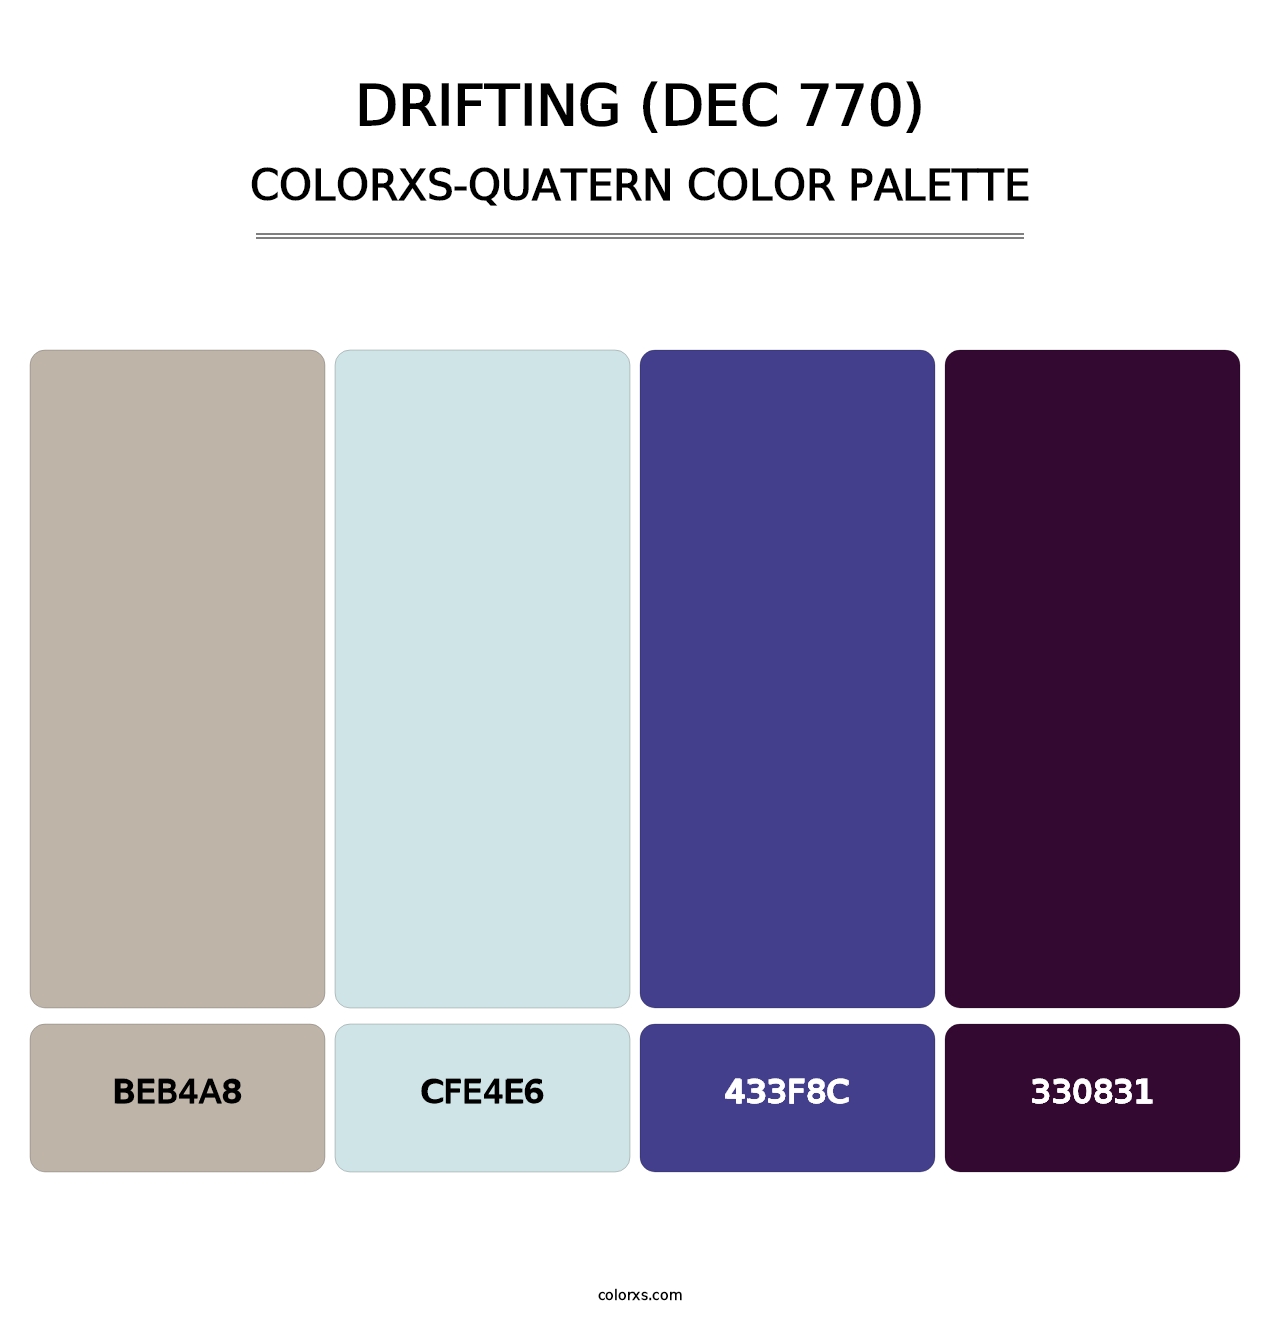 Drifting (DEC 770) - Colorxs Quatern Palette